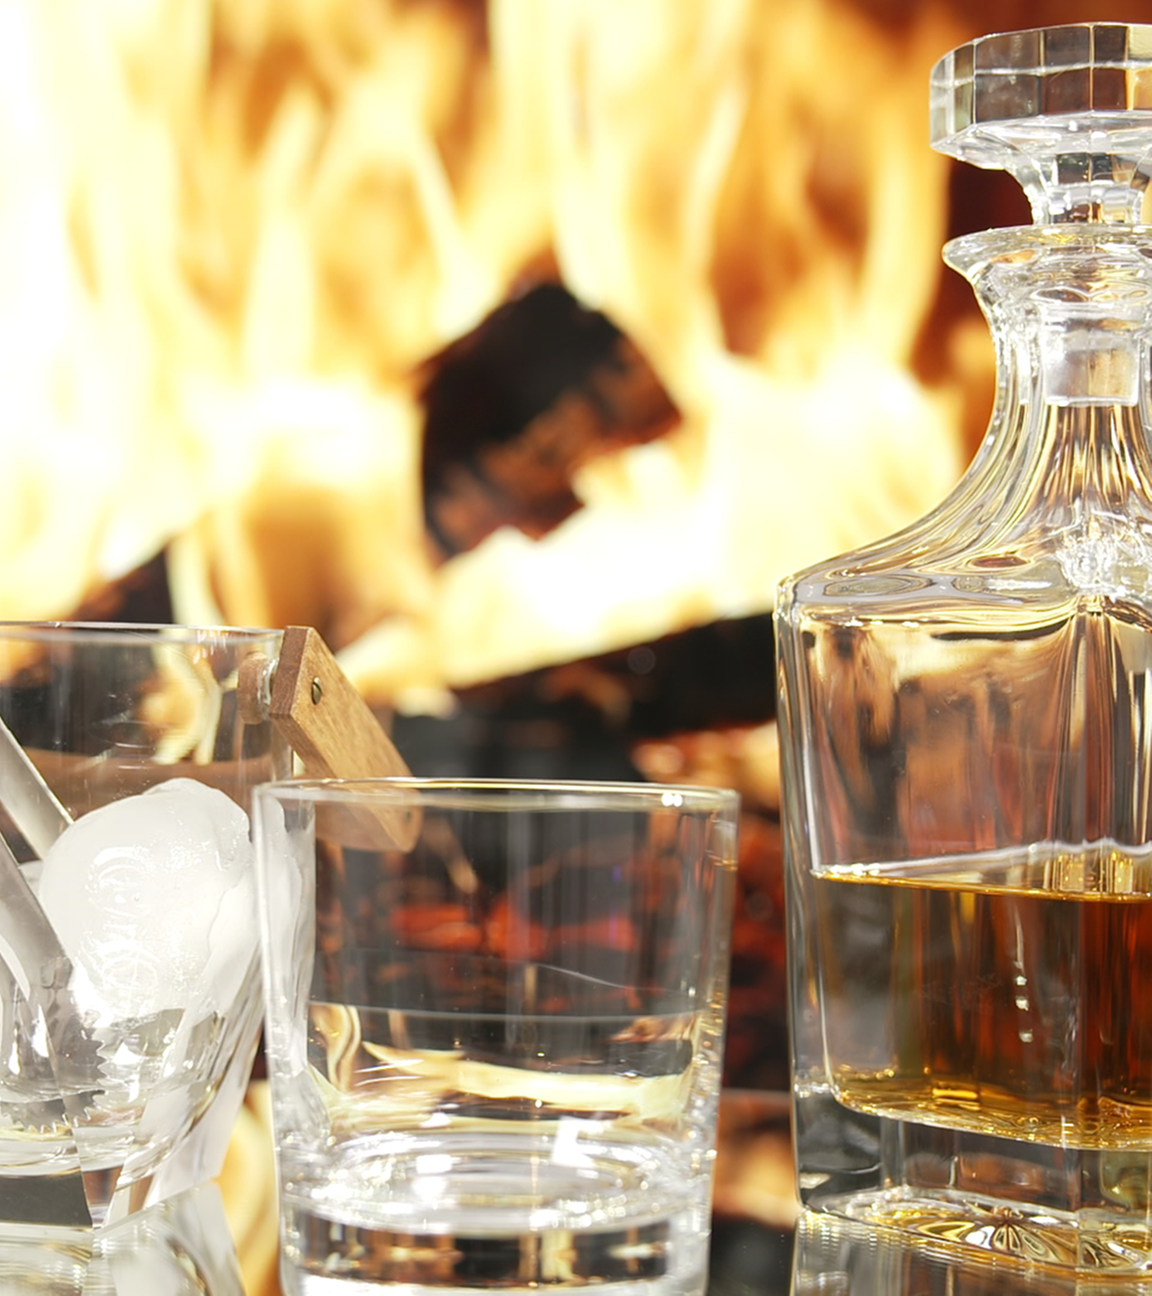 Whiskey in Karaffe mit zwei Gläsern. In einem Glas sind Eiswürfel. Im Hintergrund lodert ein Kaminfeuer.